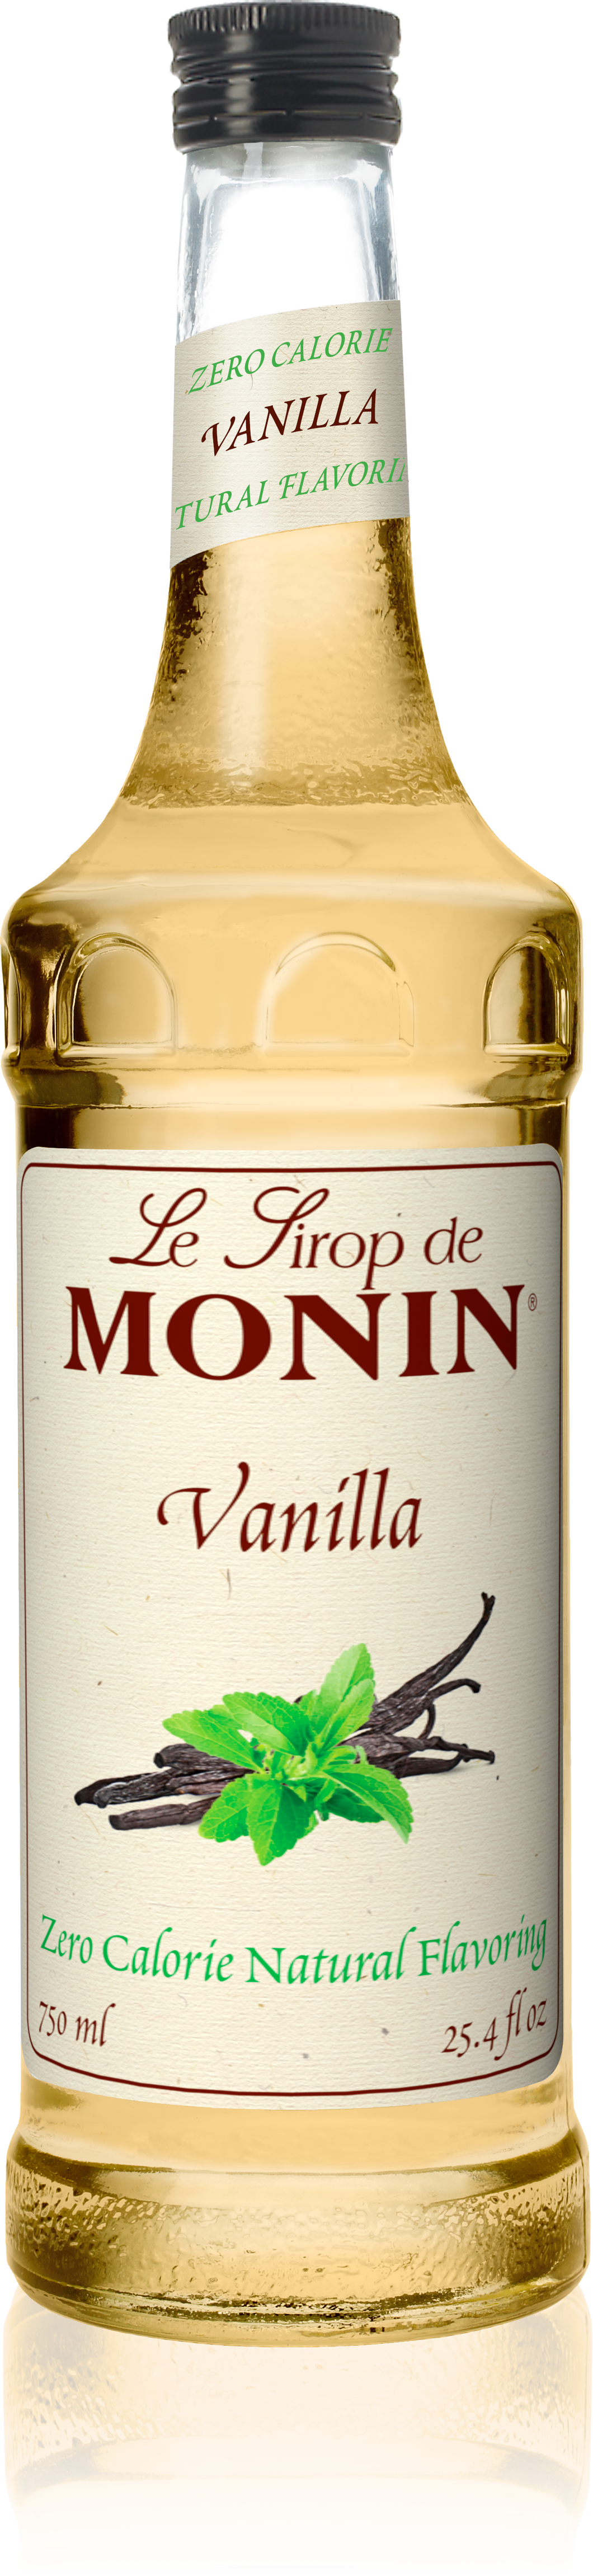 Le Sirop De Monin Zero Calorie Natural Vanilla (750ml)